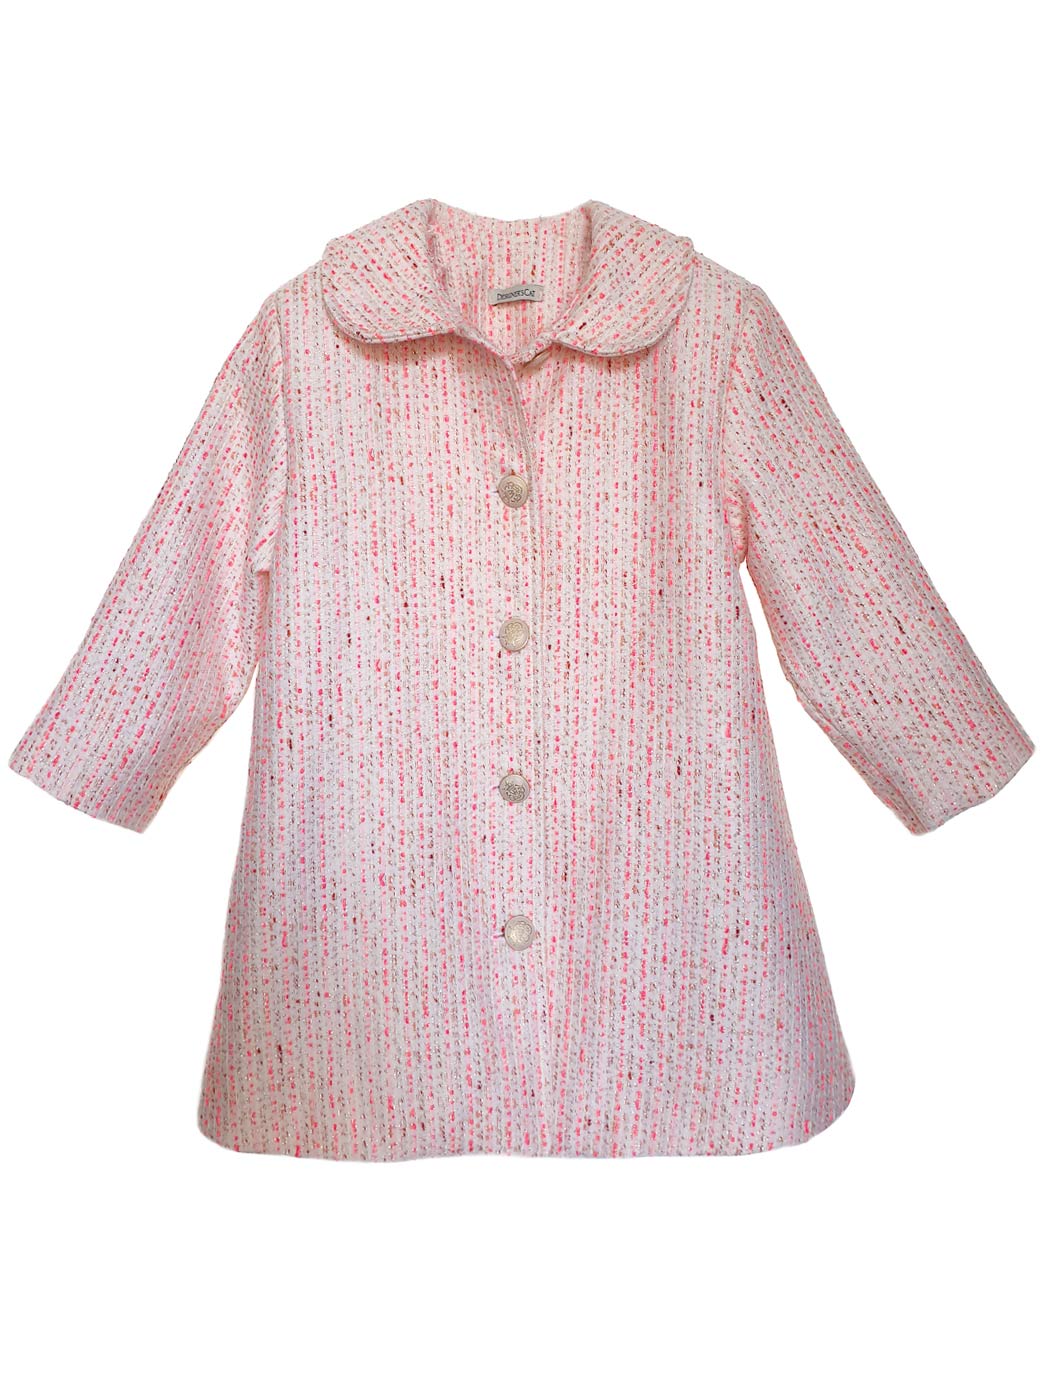 Βρεφικό παλτό για κορίτσι - AVRIL Ροζ-Φούξια